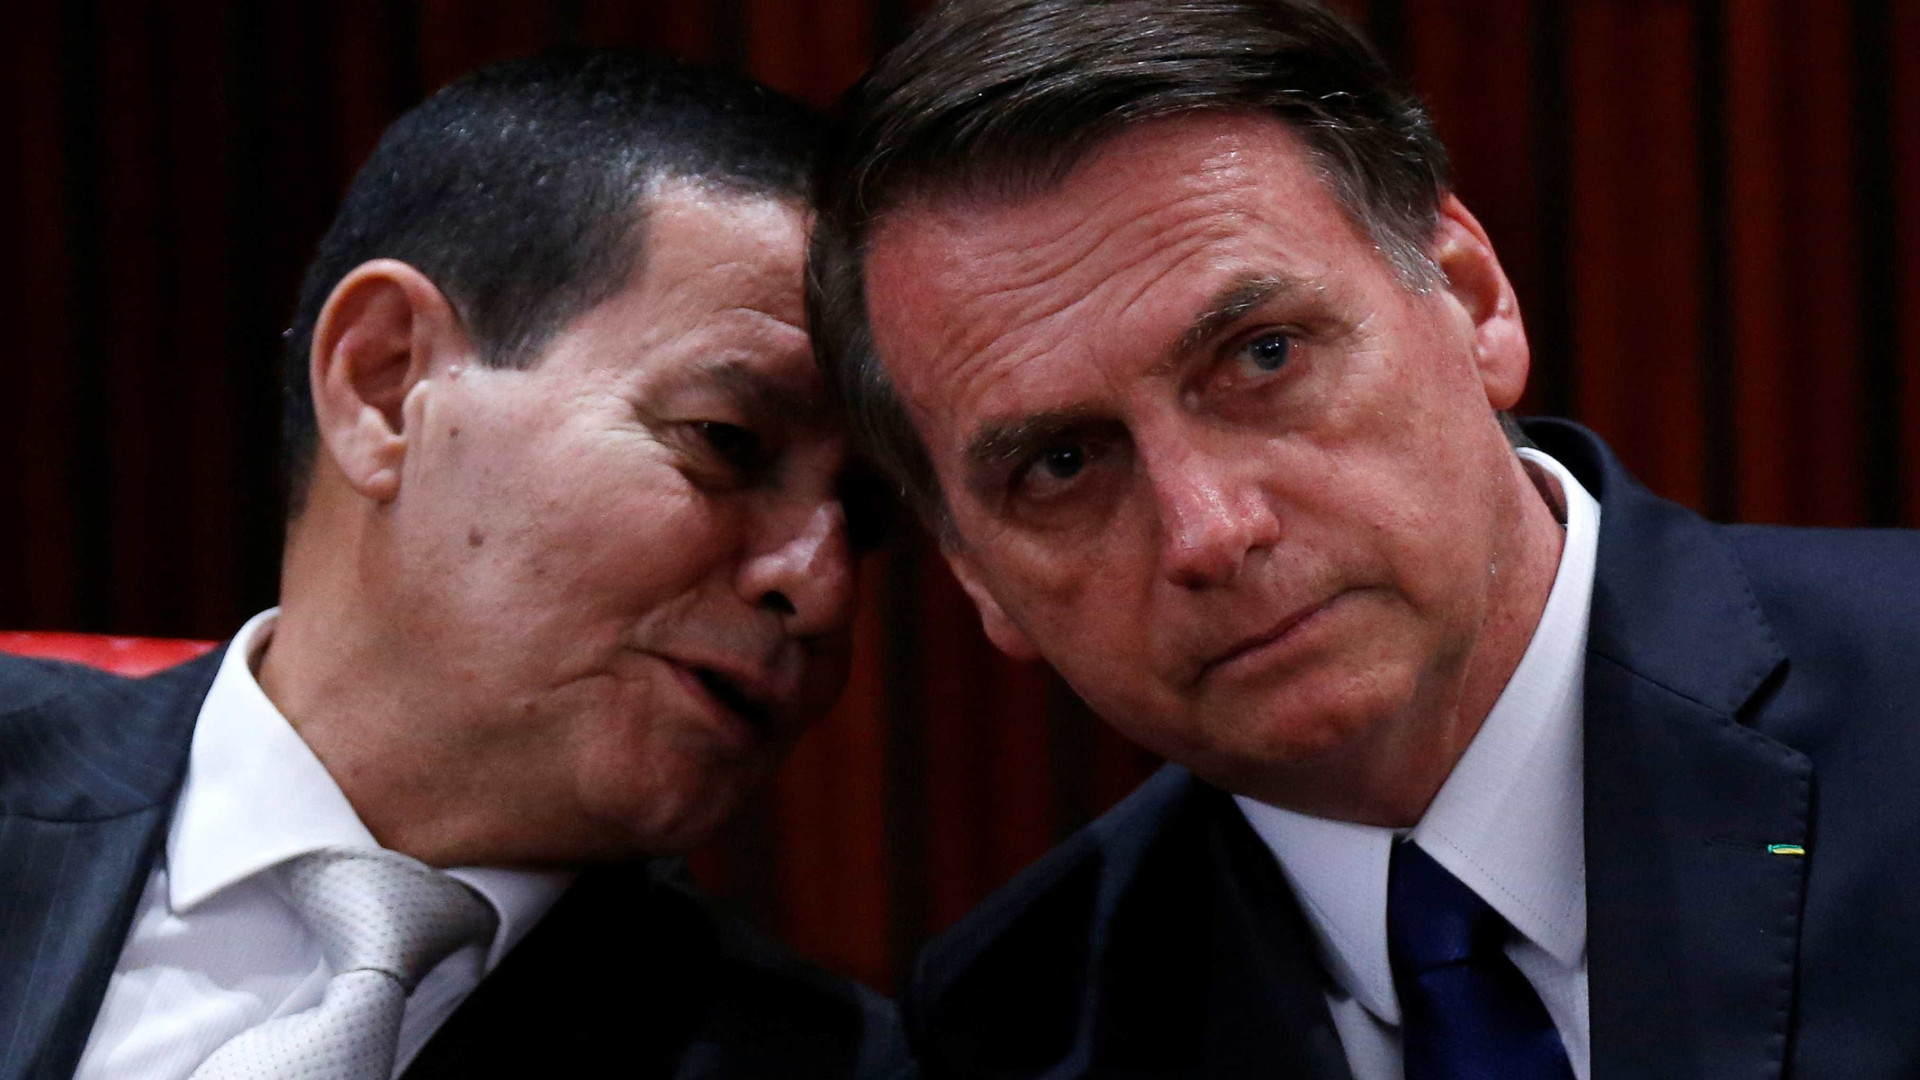 Tarefa de Bolsonaro é 'romper o imobilismo' no Brasil, diz Mourão